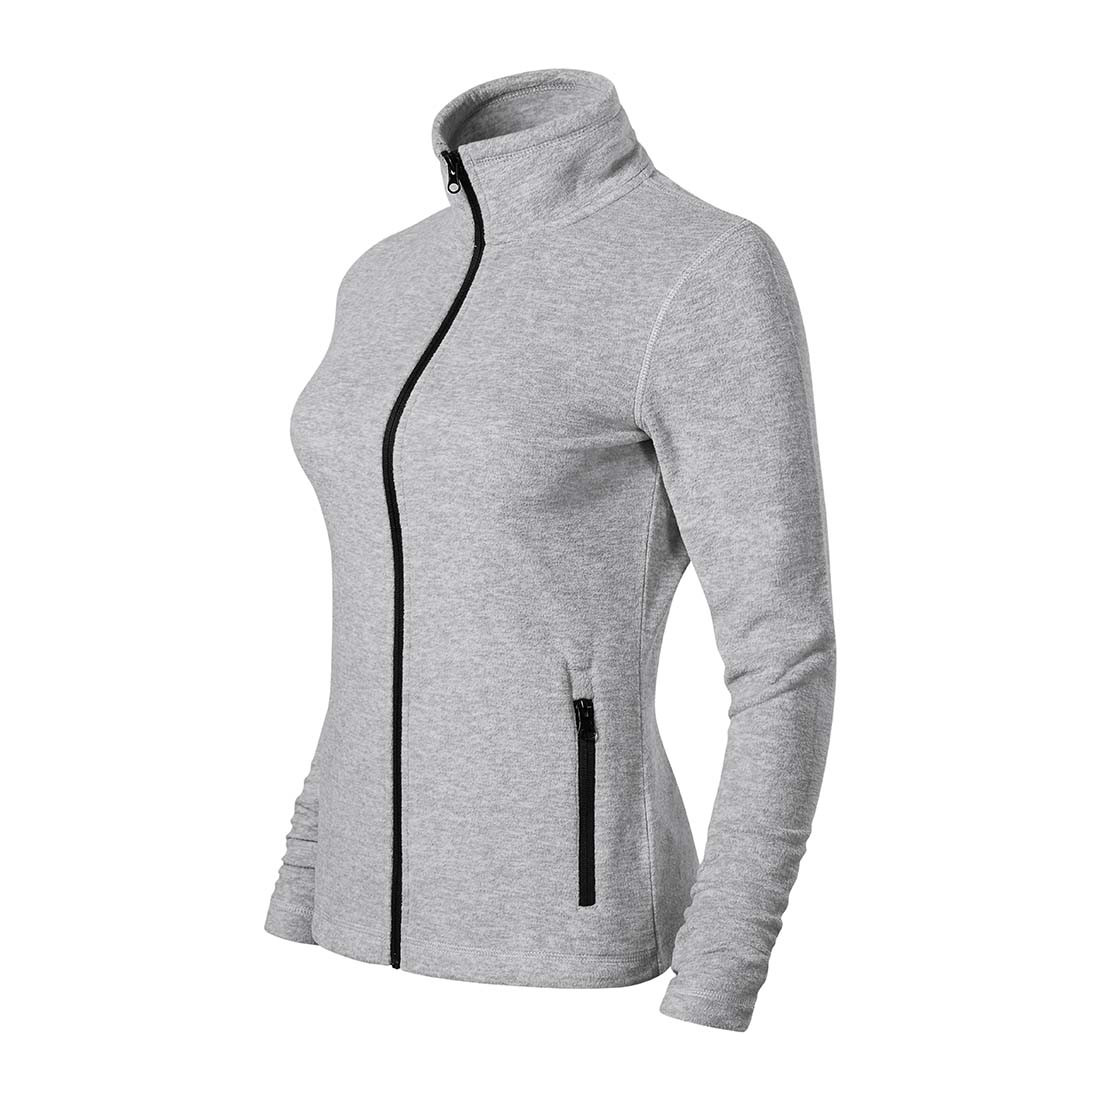 Micro fleece pour femmes - Les vêtements de protection